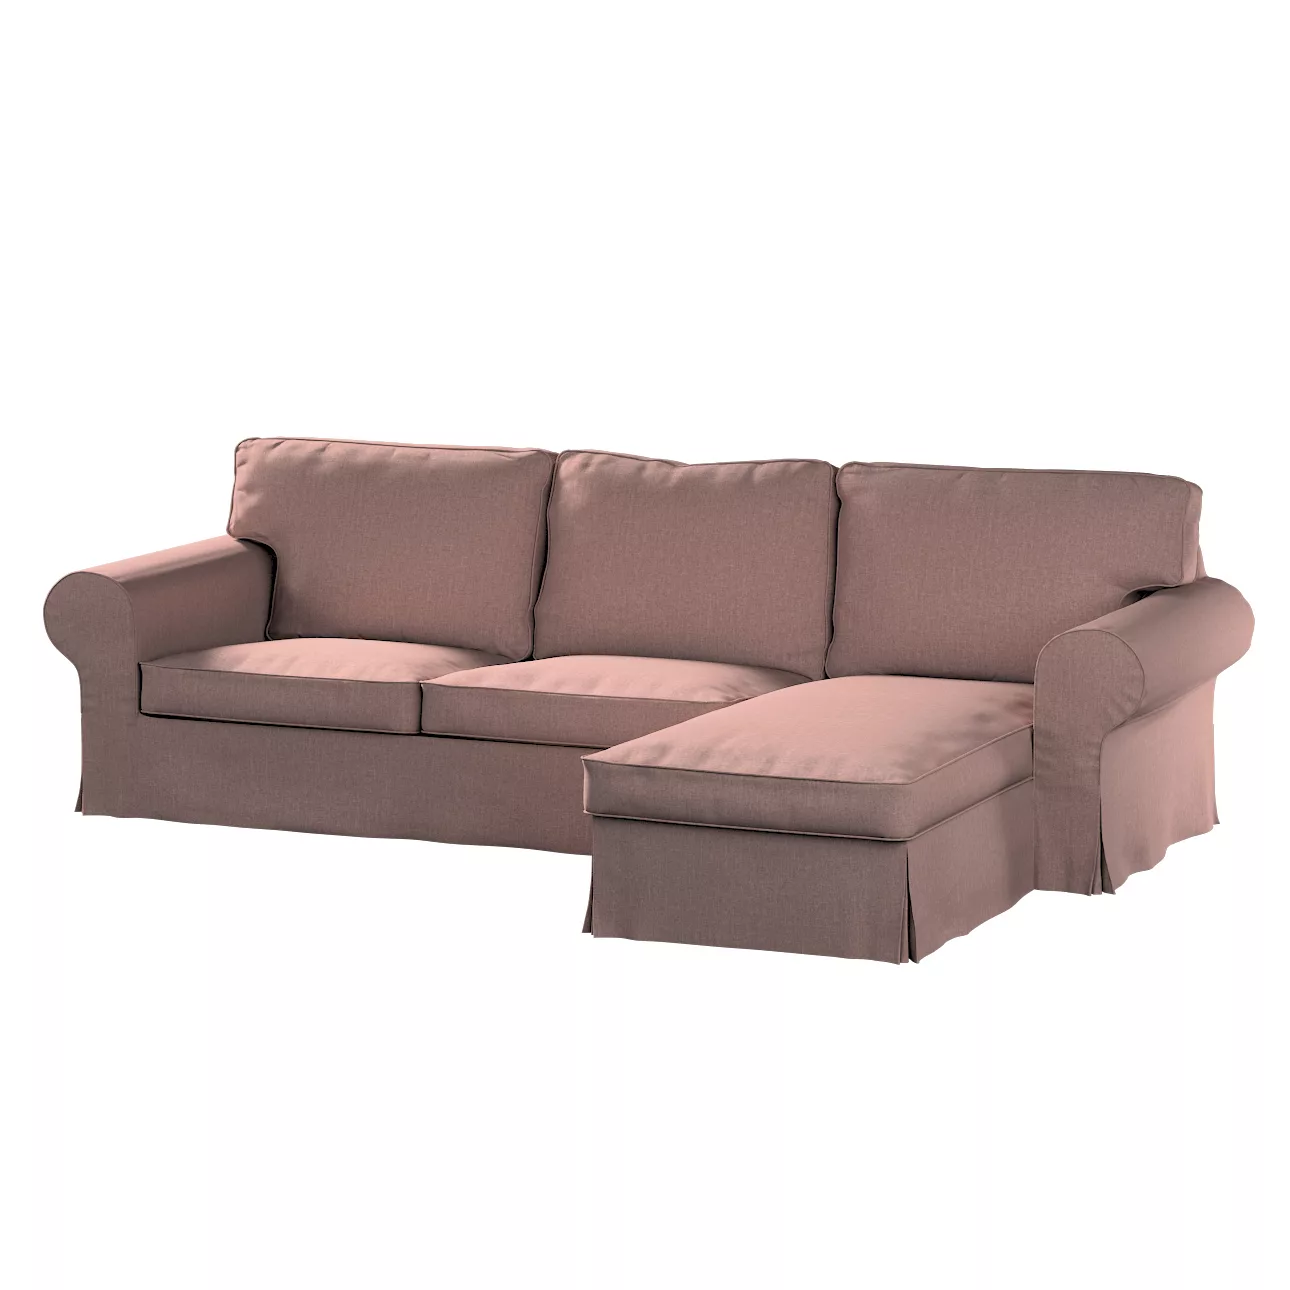 Bezug für Ektorp 2-Sitzer Sofa mit Recamiere, altrosa, Ektorp 2-Sitzer Sofa günstig online kaufen